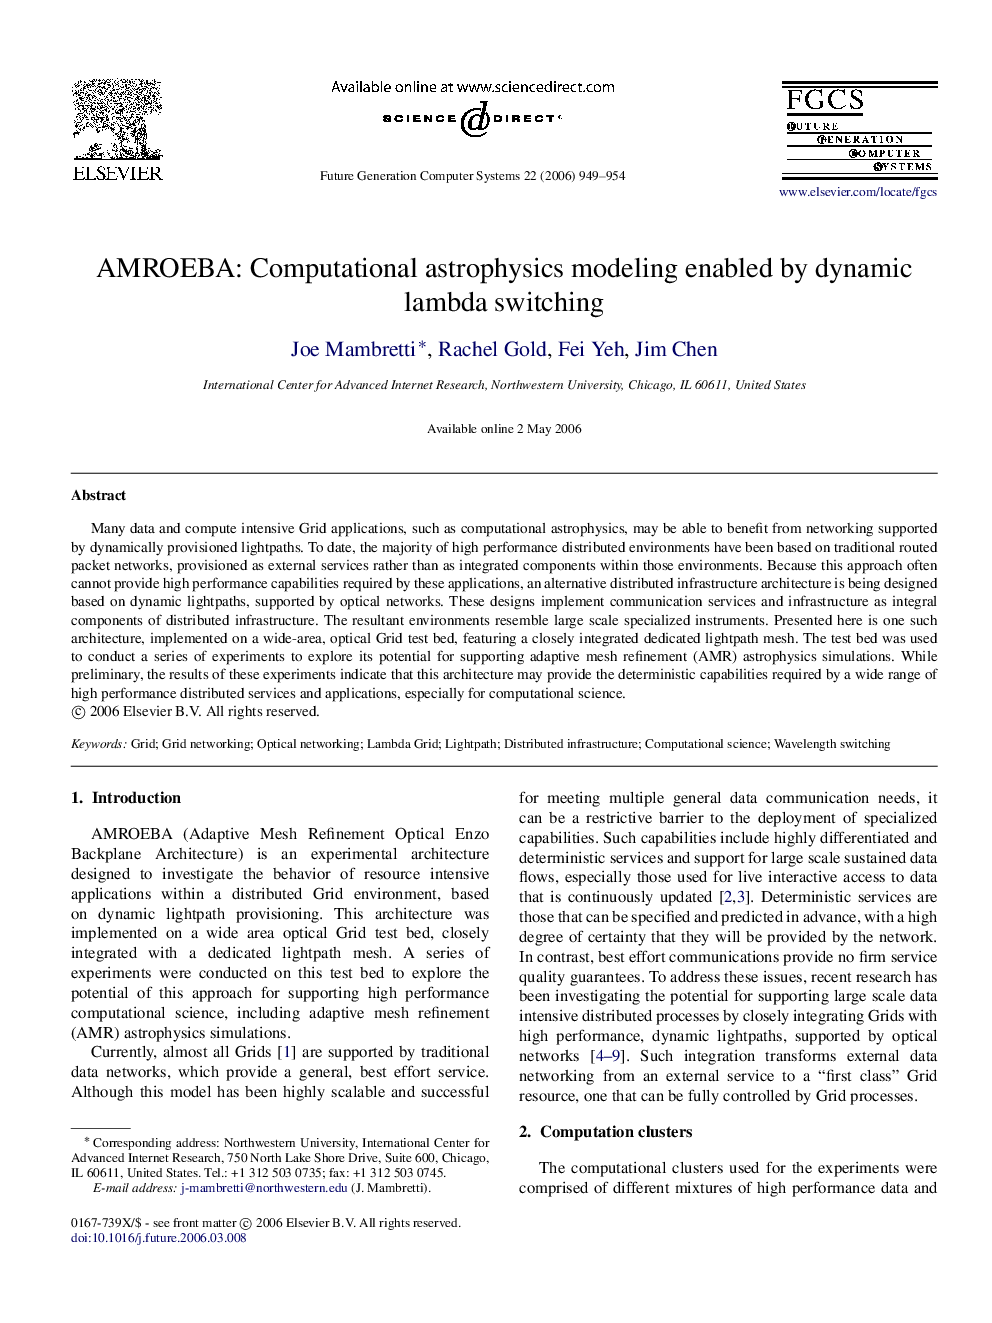 AMROEBA: Computational astrophysics modeling enabled by dynamic lambda switching